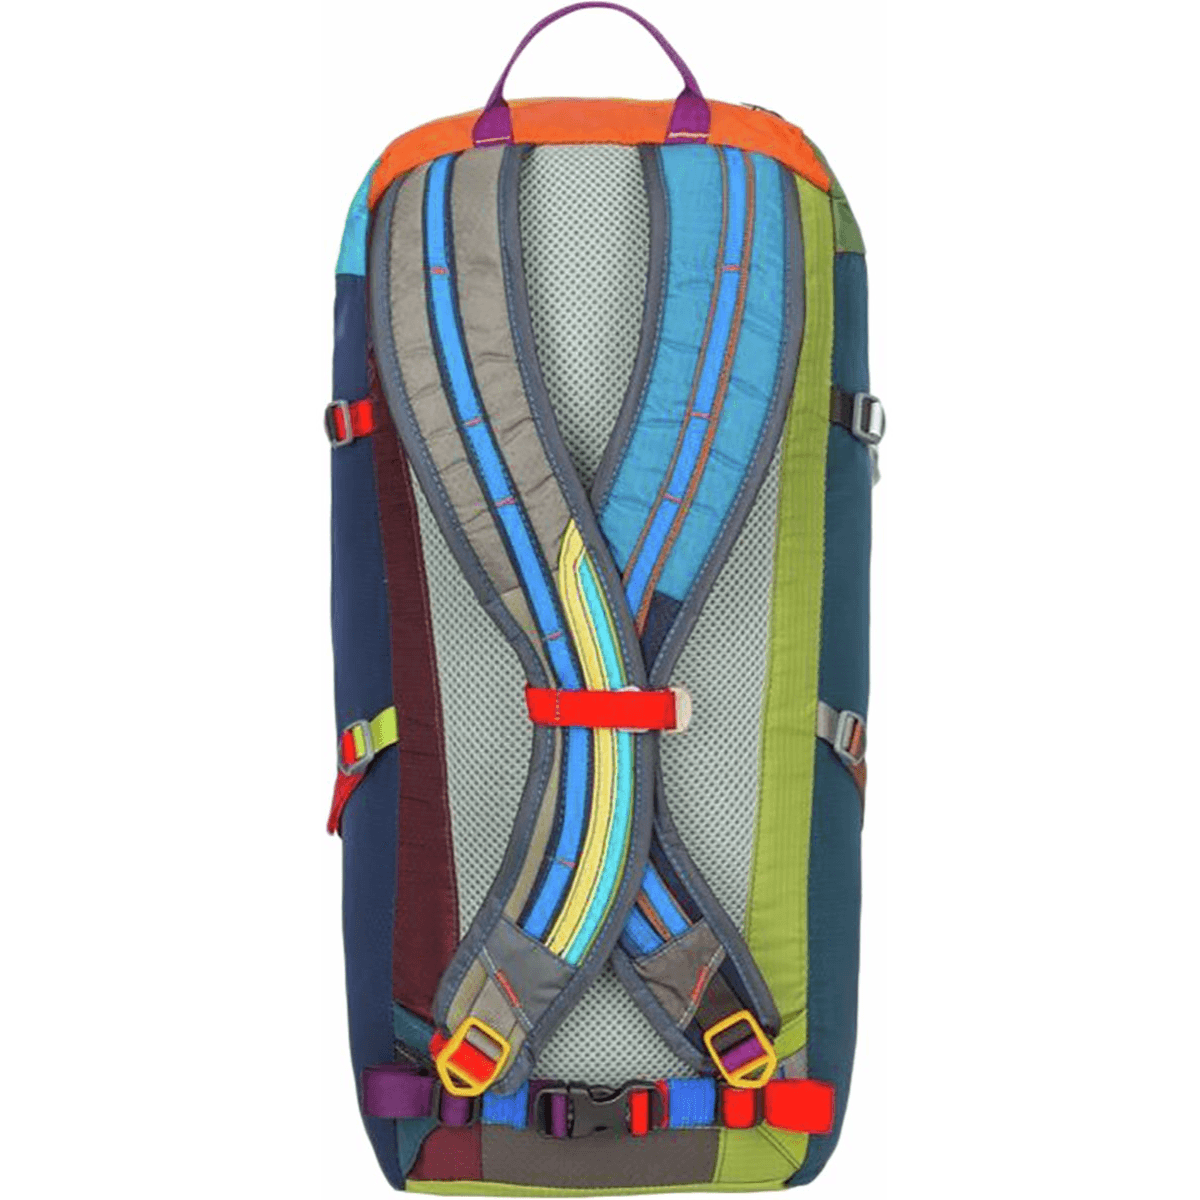 Cotopaxi Tarak 20L Backpack - Bobwards.com